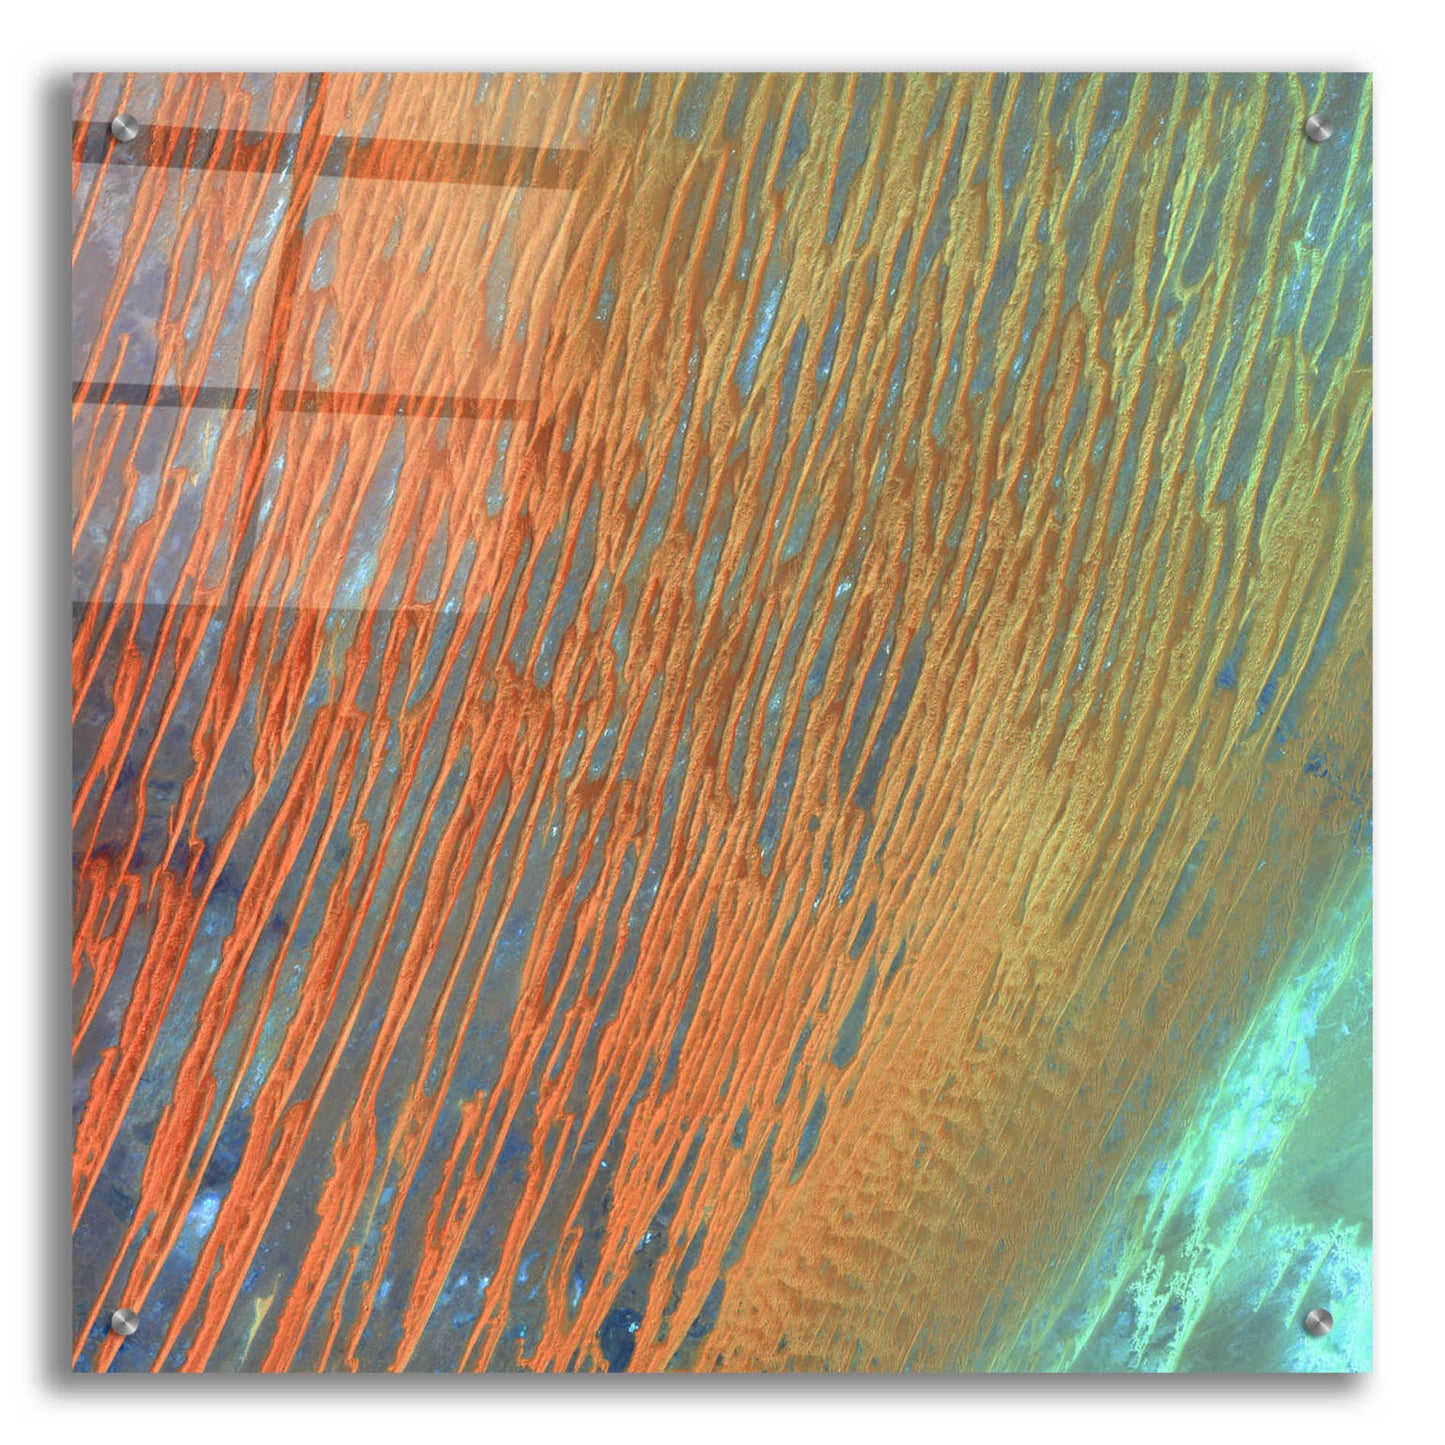 Epic Art 'Earth as Art: Desert Patterns,' Acrylic Glass Wall Art,24x24